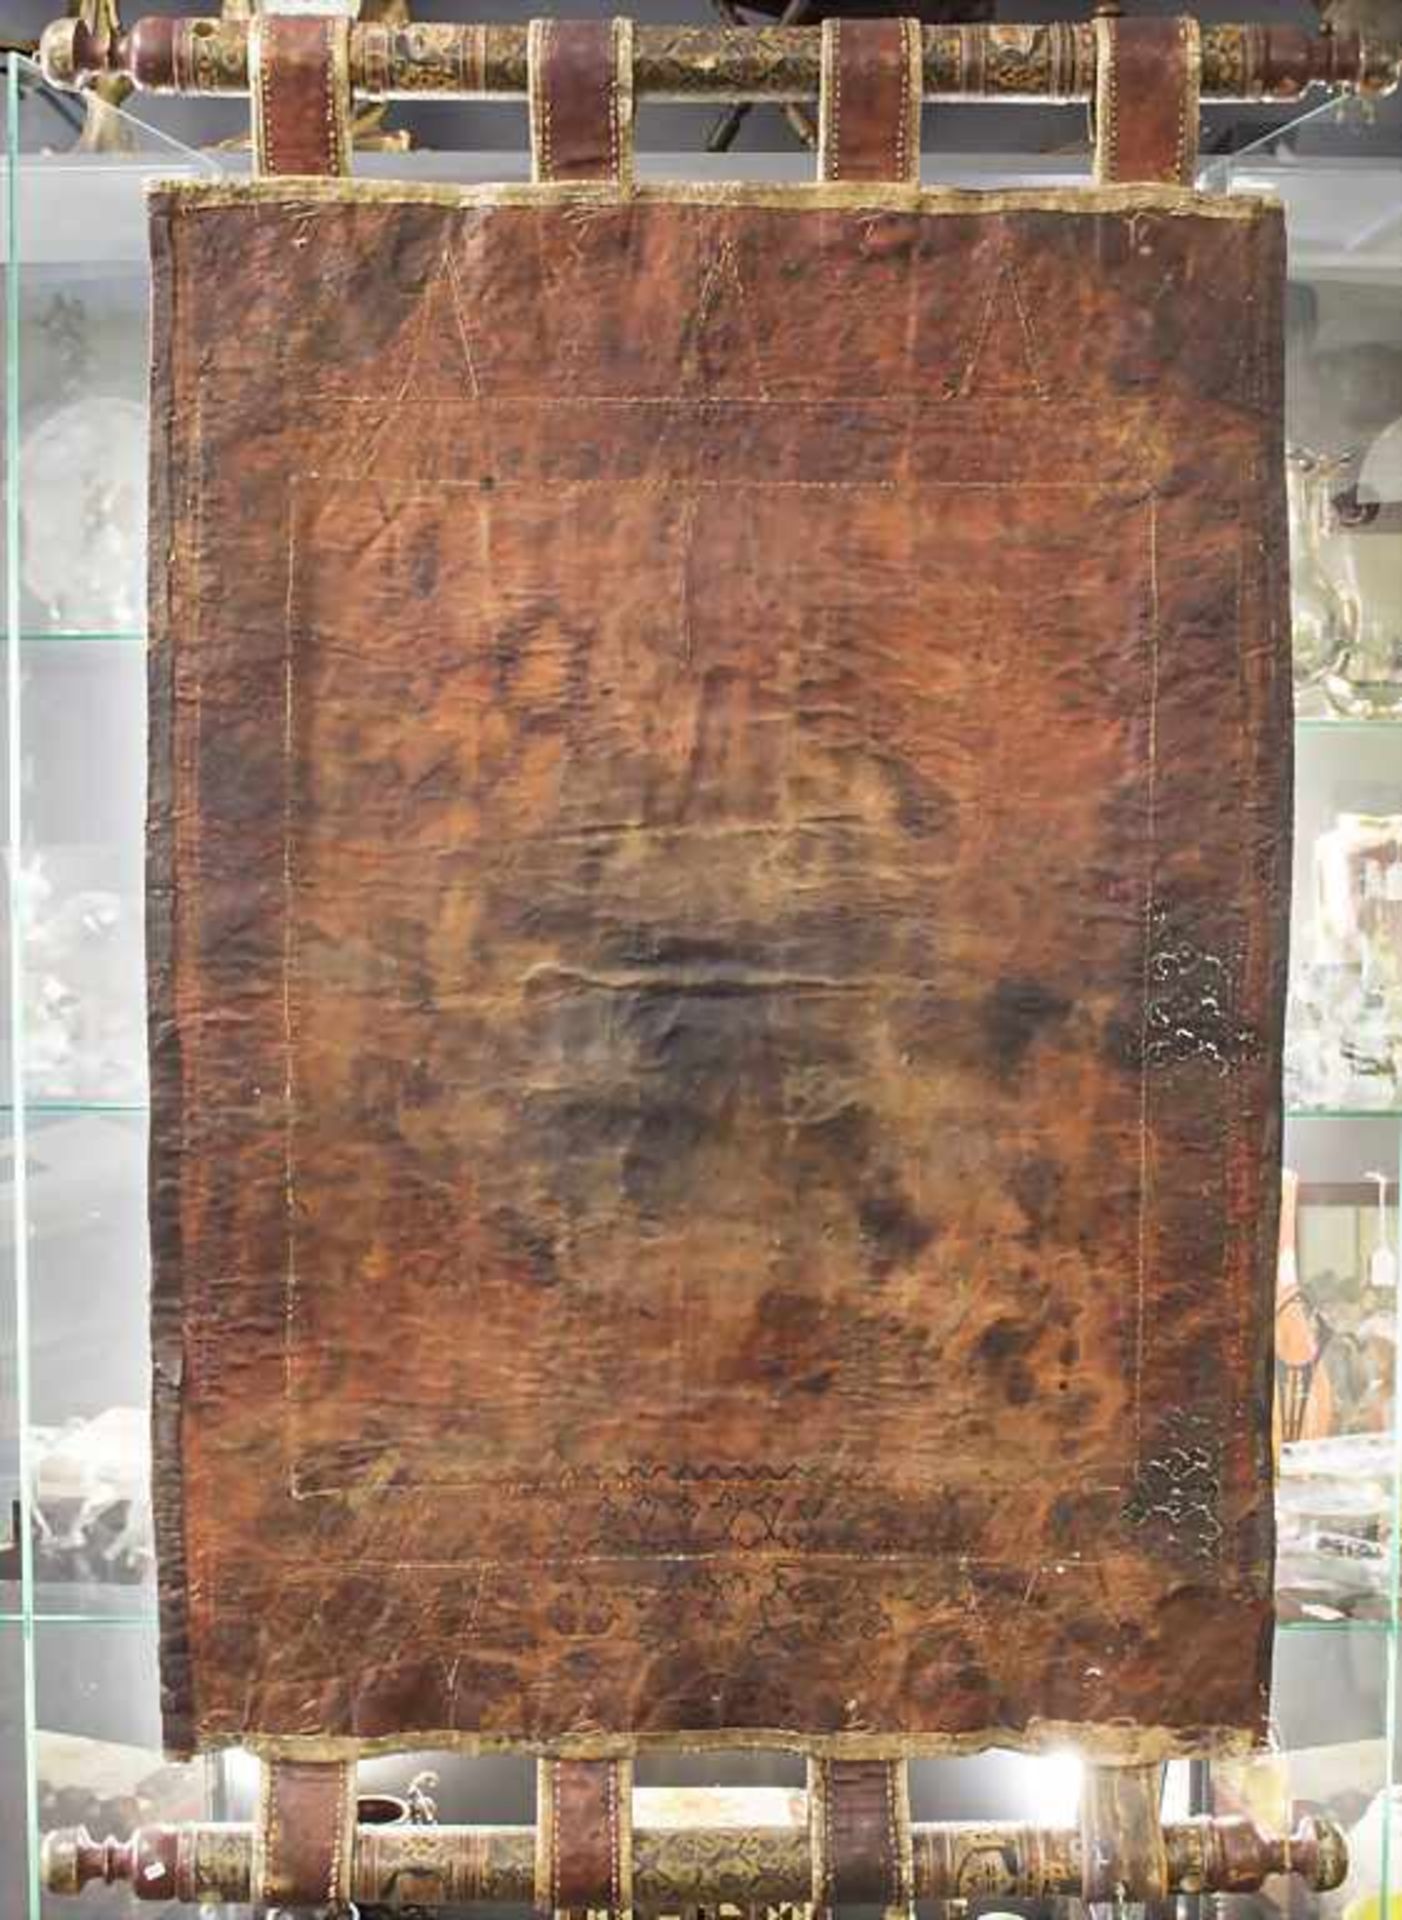 Wandbehang / A wall hanging, Pakistan, Ende 19. Jh. Material: Leder, Gewebe, gedrechseltes Holz, - Bild 2 aus 2